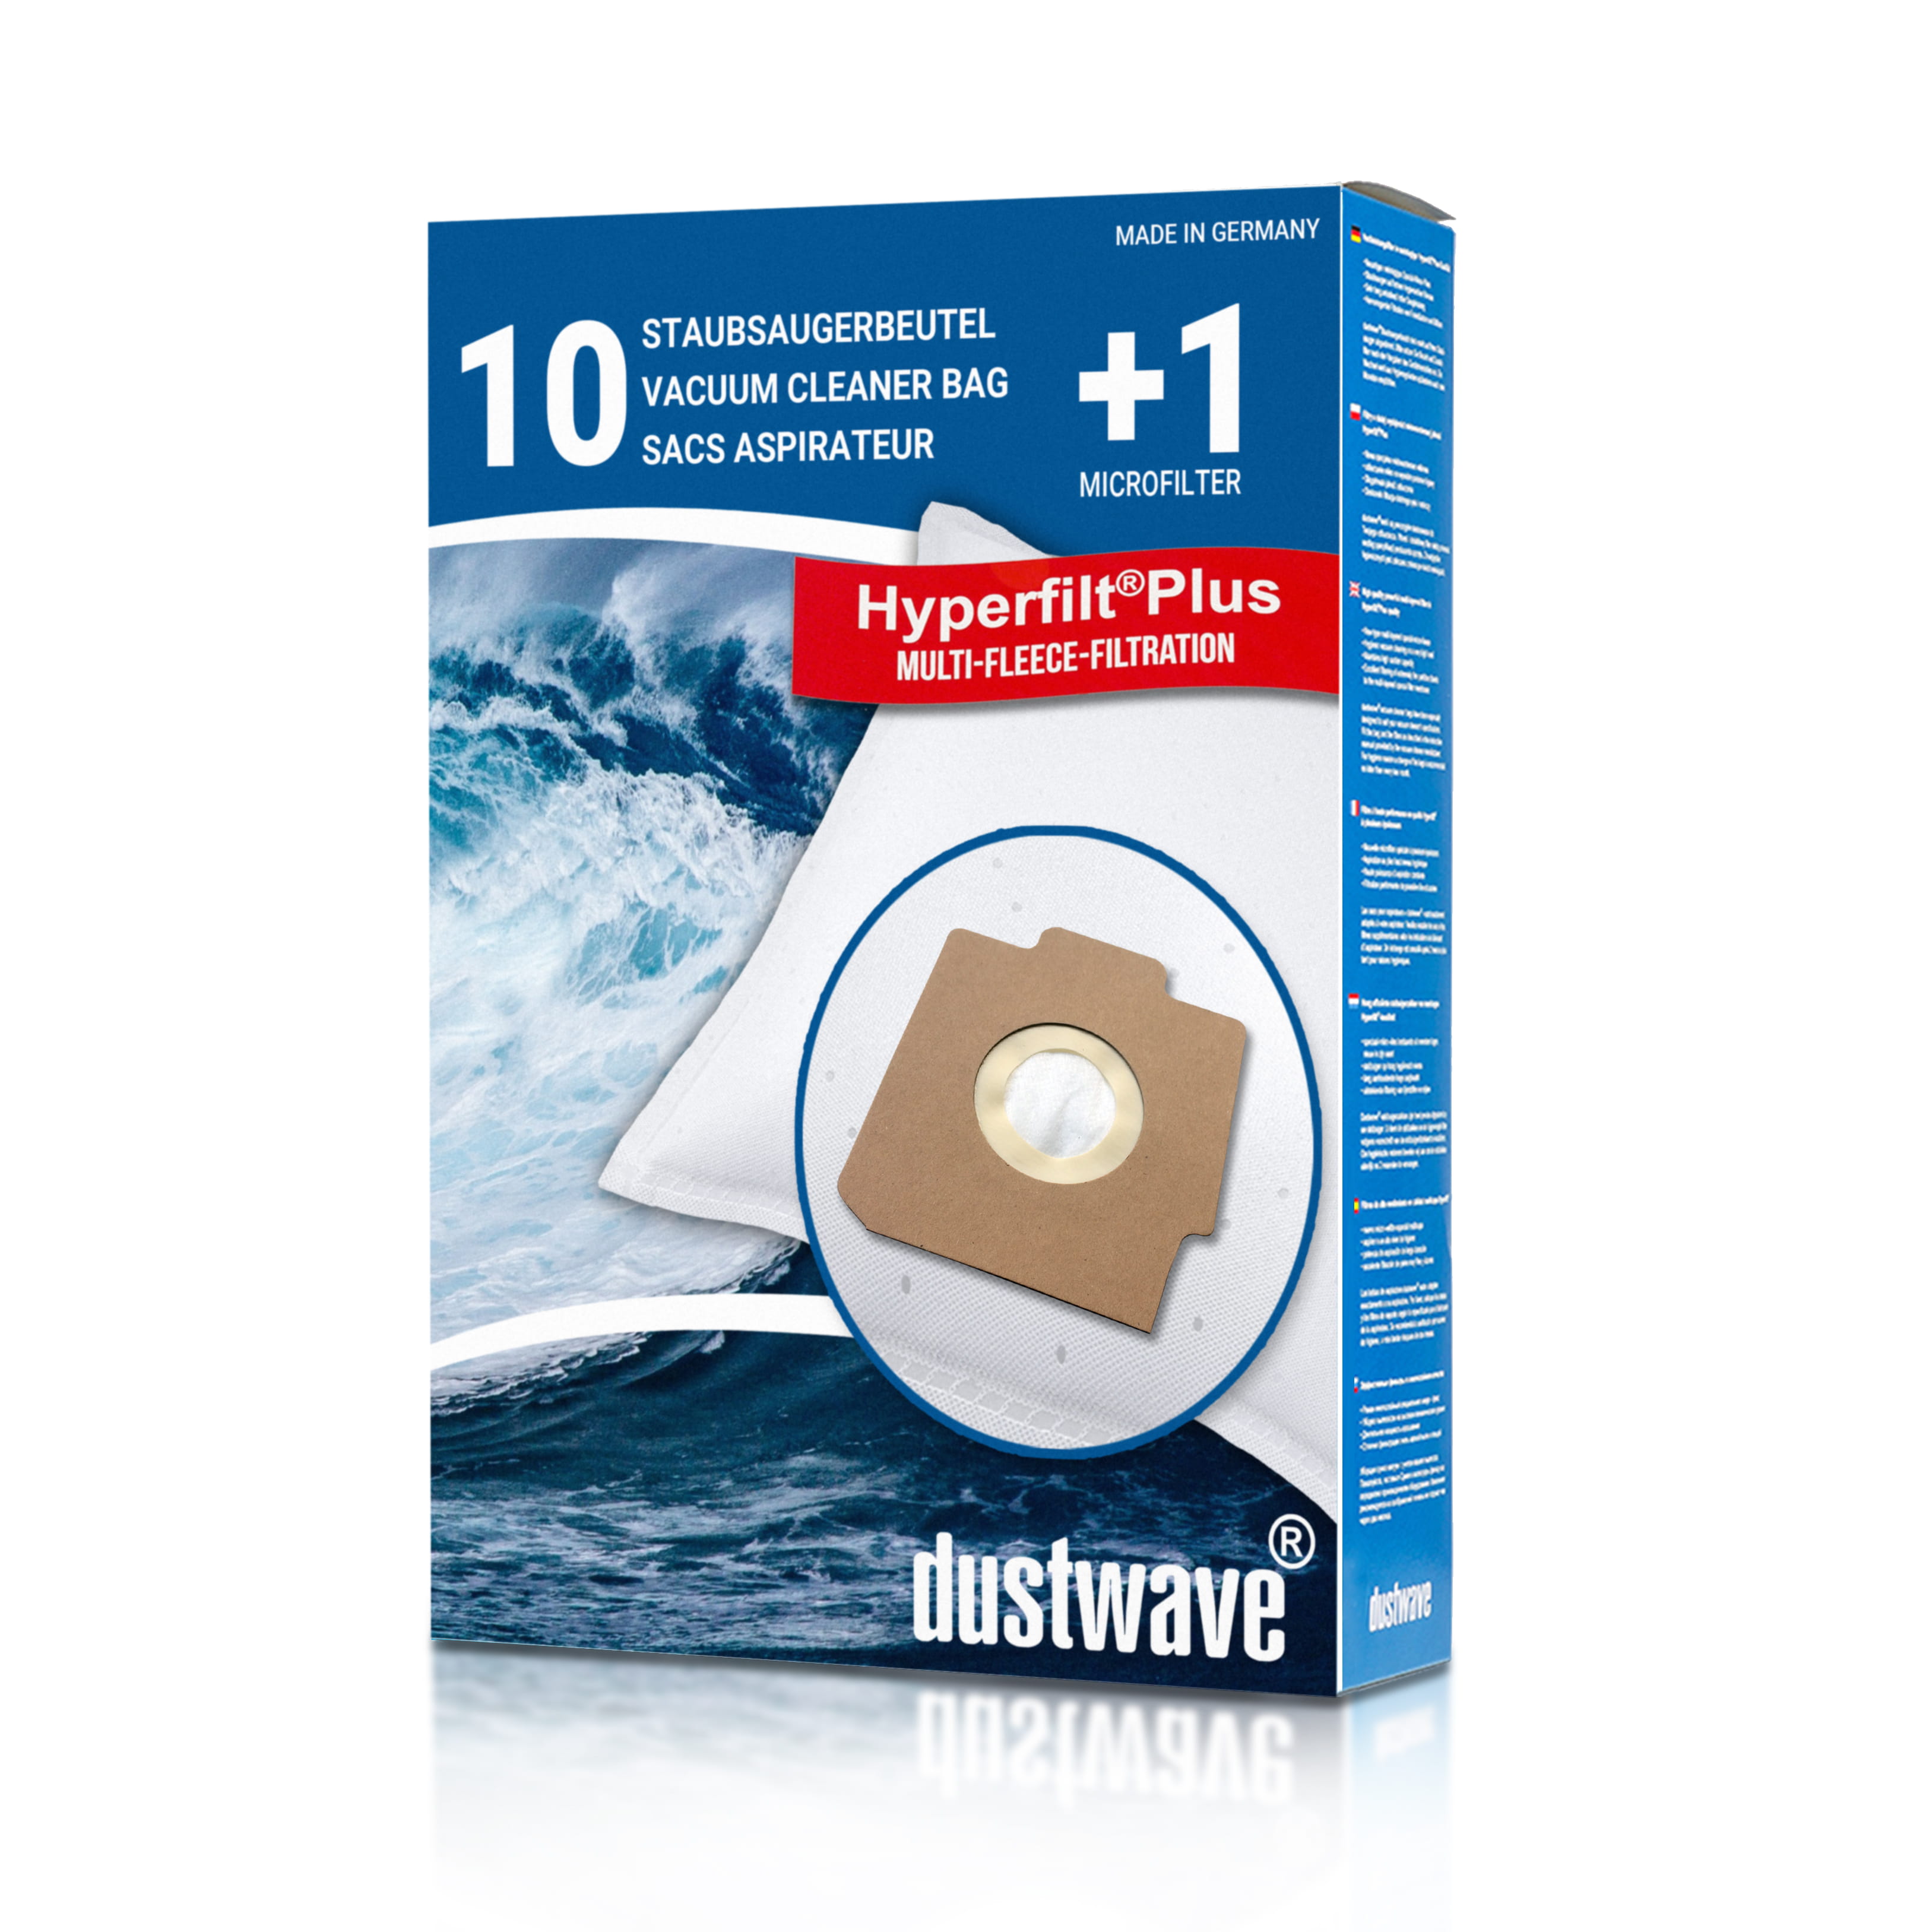 Dustwave® 10 Staubsaugerbeutel für Hoover S3456 - hocheffizient, mehrlagiges Mikrovlies mit Hygieneverschluss - Made in Germany